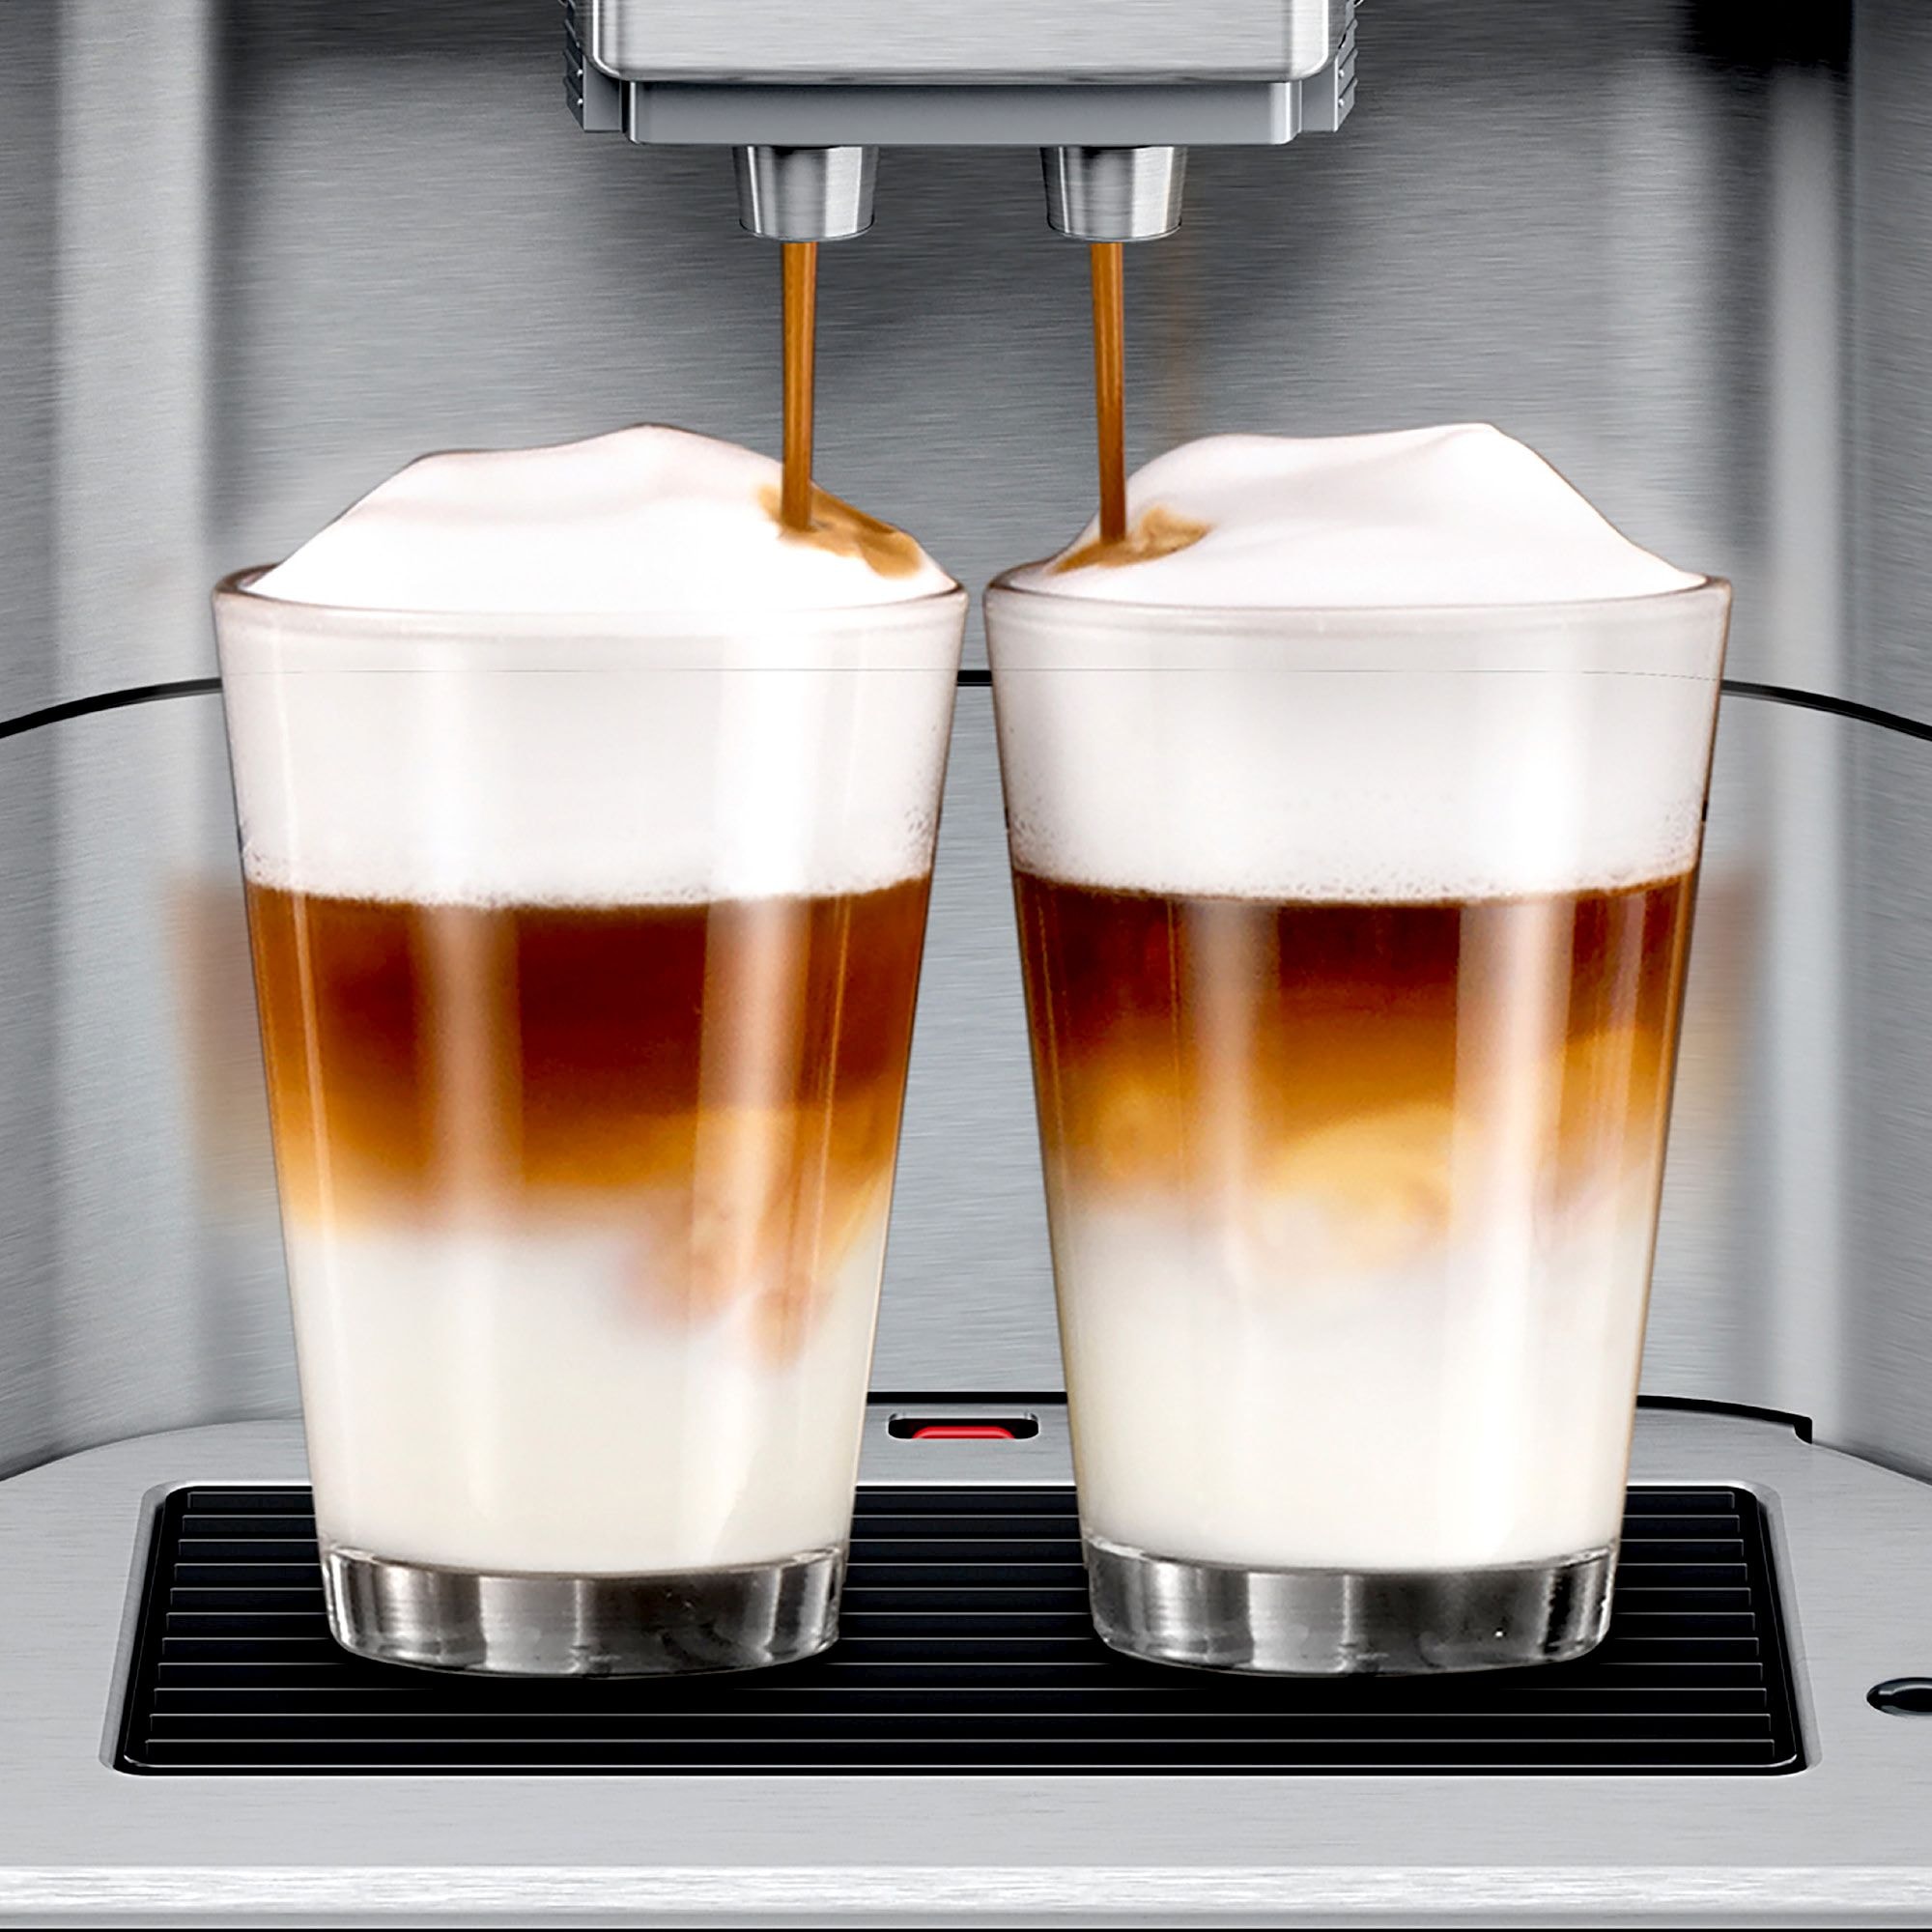 SIEMENS Kaffeevollautomat »EQ6 plus s700 TE657M03DE, viele Kaffeespezialitäten, Doppeltassenfunk«, Edelstahl-Milchbehälter, automatische Dampfreinigung, edelstahl